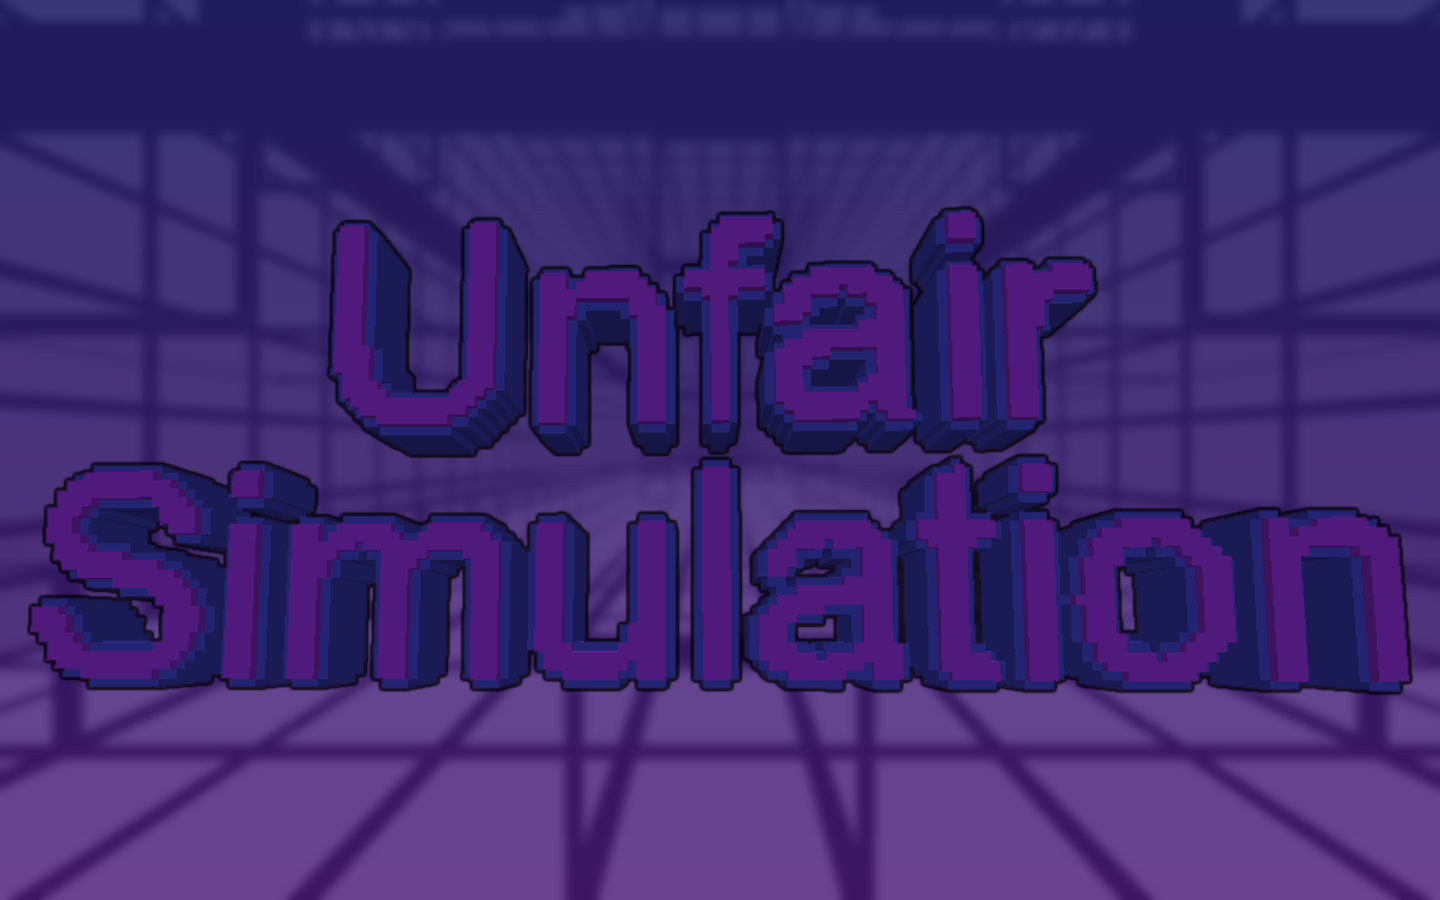 Descarca Unfair Simulation pentru Minecraft 1.16.3